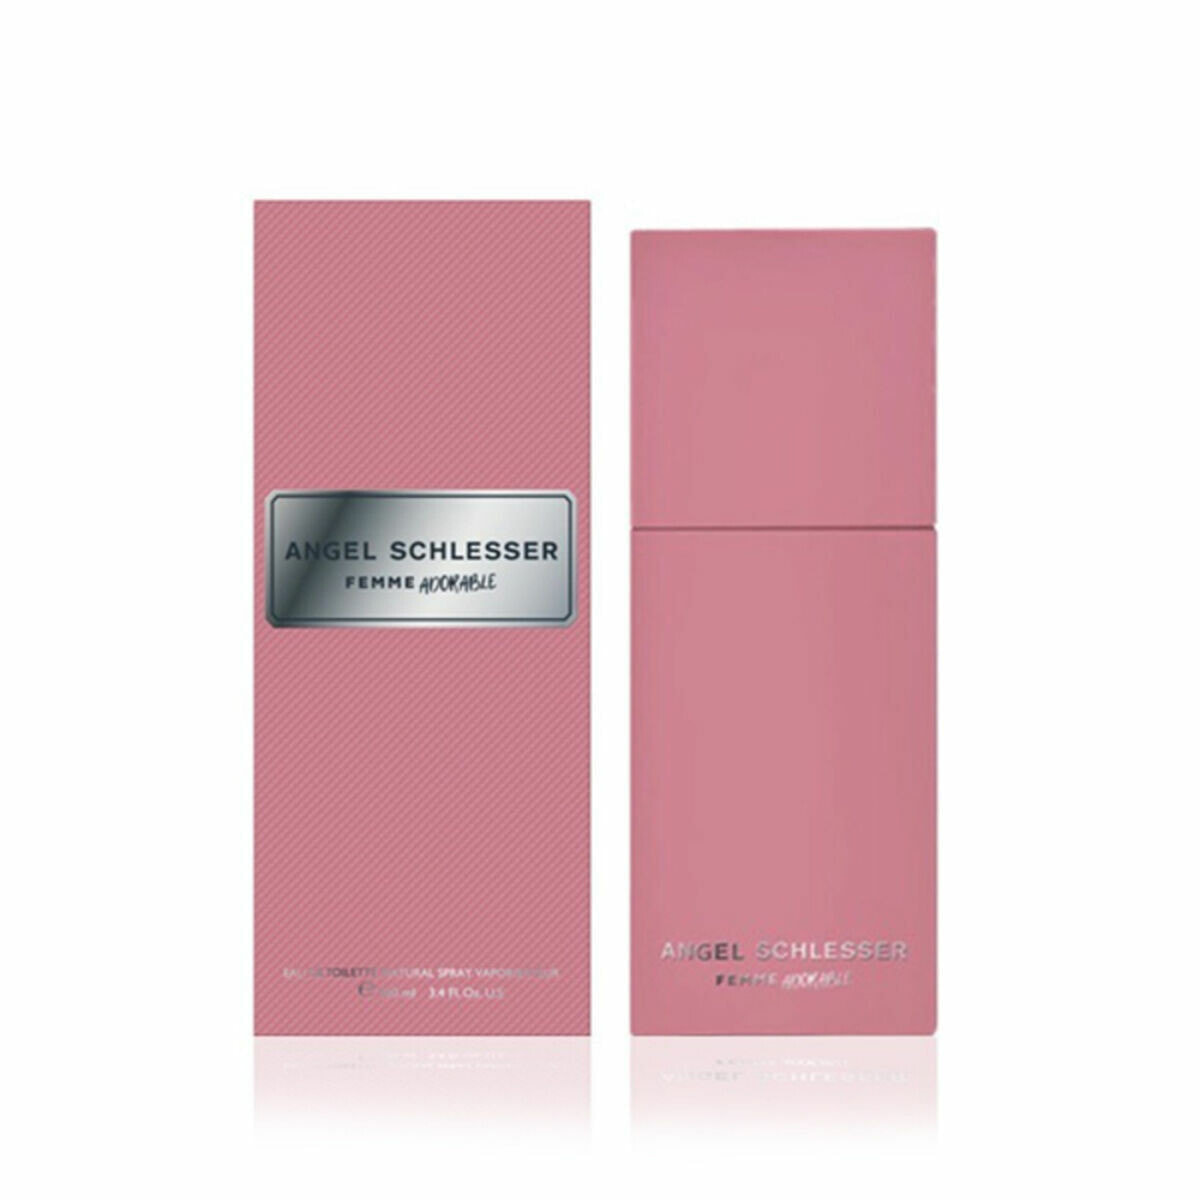 Women's Perfume Angel Schlesser EDT Femme Adorable (100 ml)